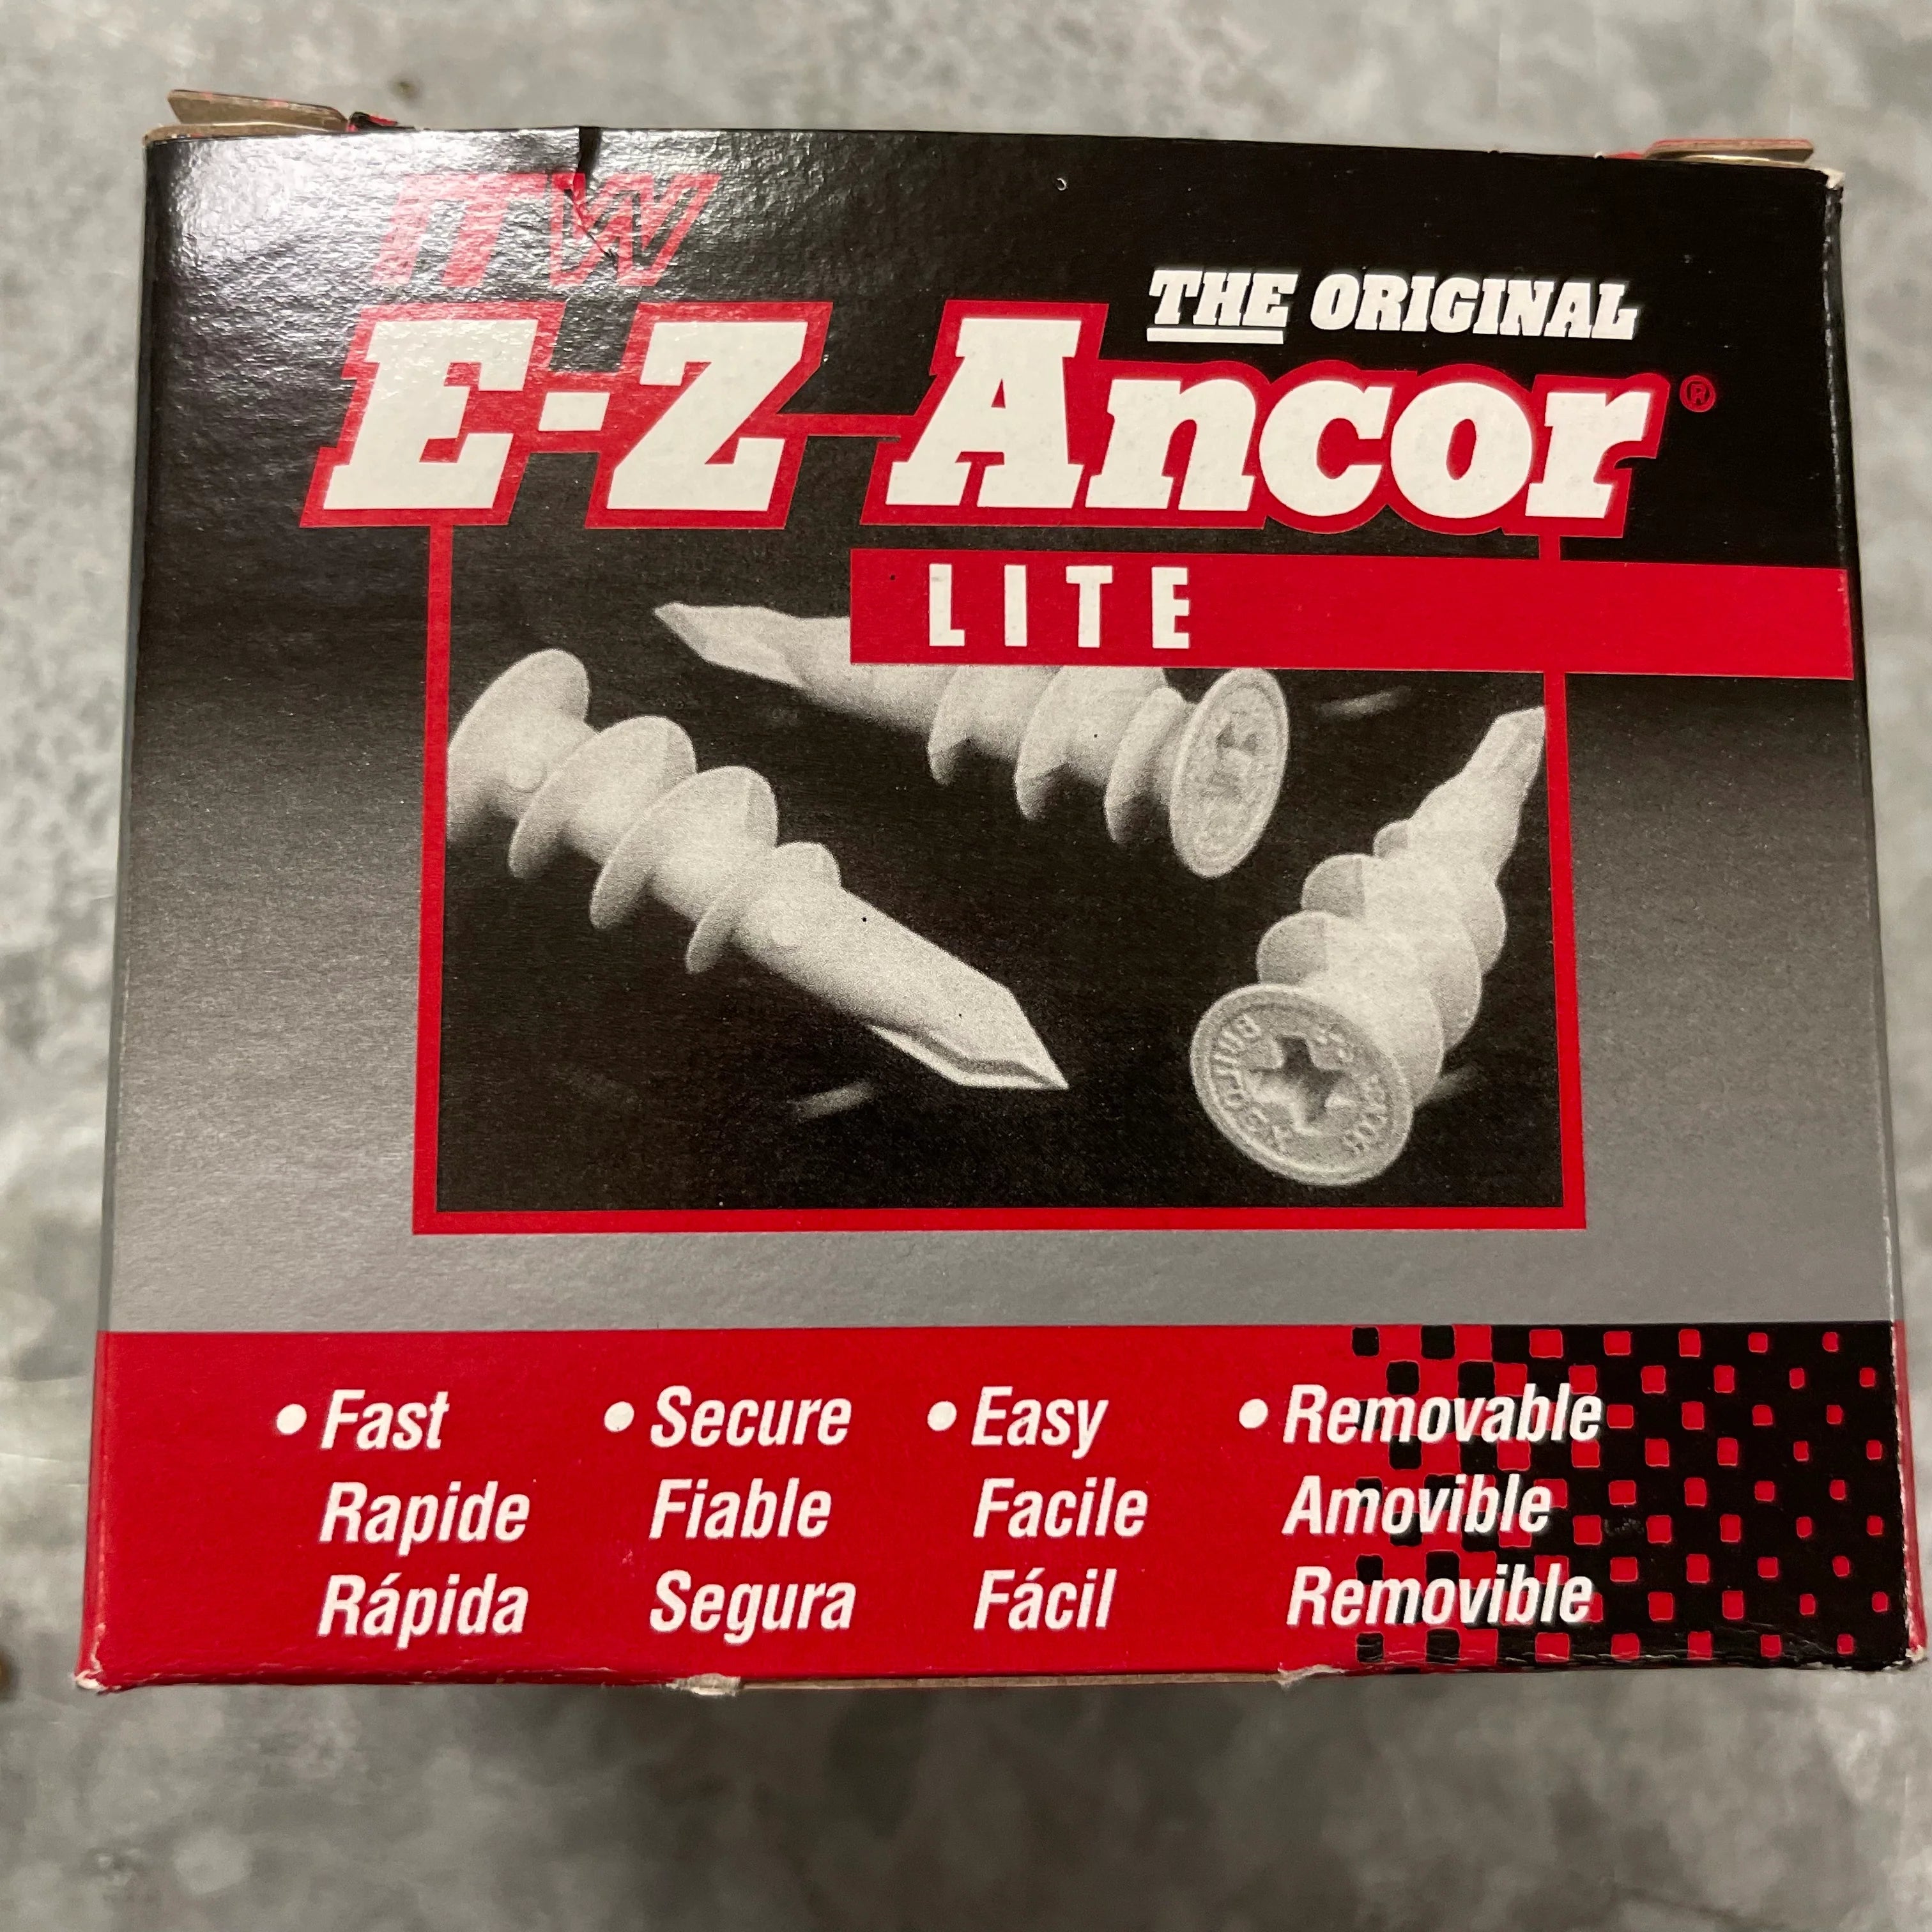 E-Z Ancors Lite 5006902 Anchor